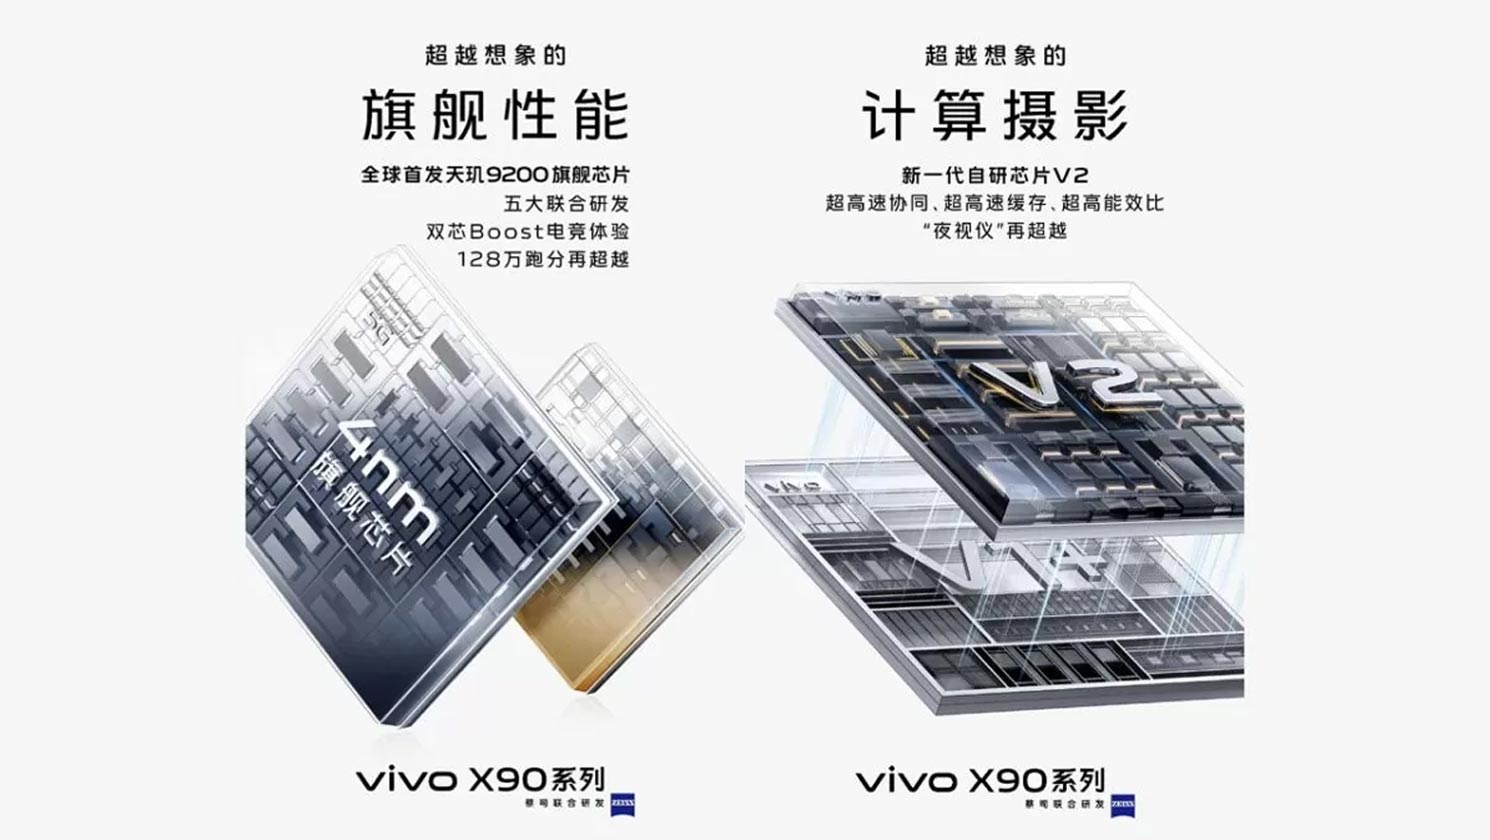 VIVO X90 - SoC e ISP